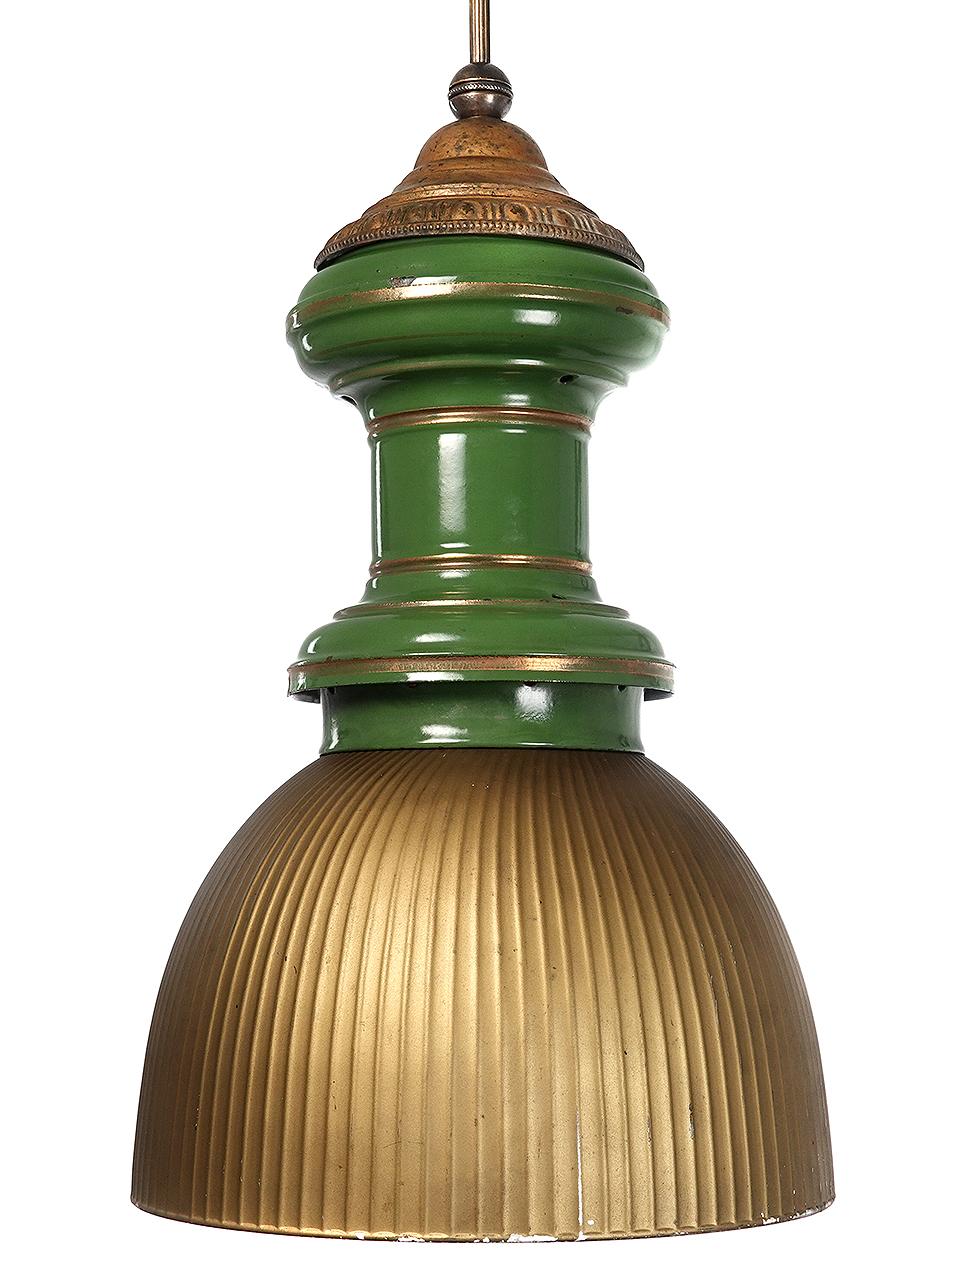 Cette lampe à gaz ancienne a un aspect qui lui est propre. Le corps du luminaire est en émail vert avec des reflets dorés. L'abat-jour en forme de dôme profond est l'un des plus grands exemples de verre de mercure miroité que nous ayons vus.